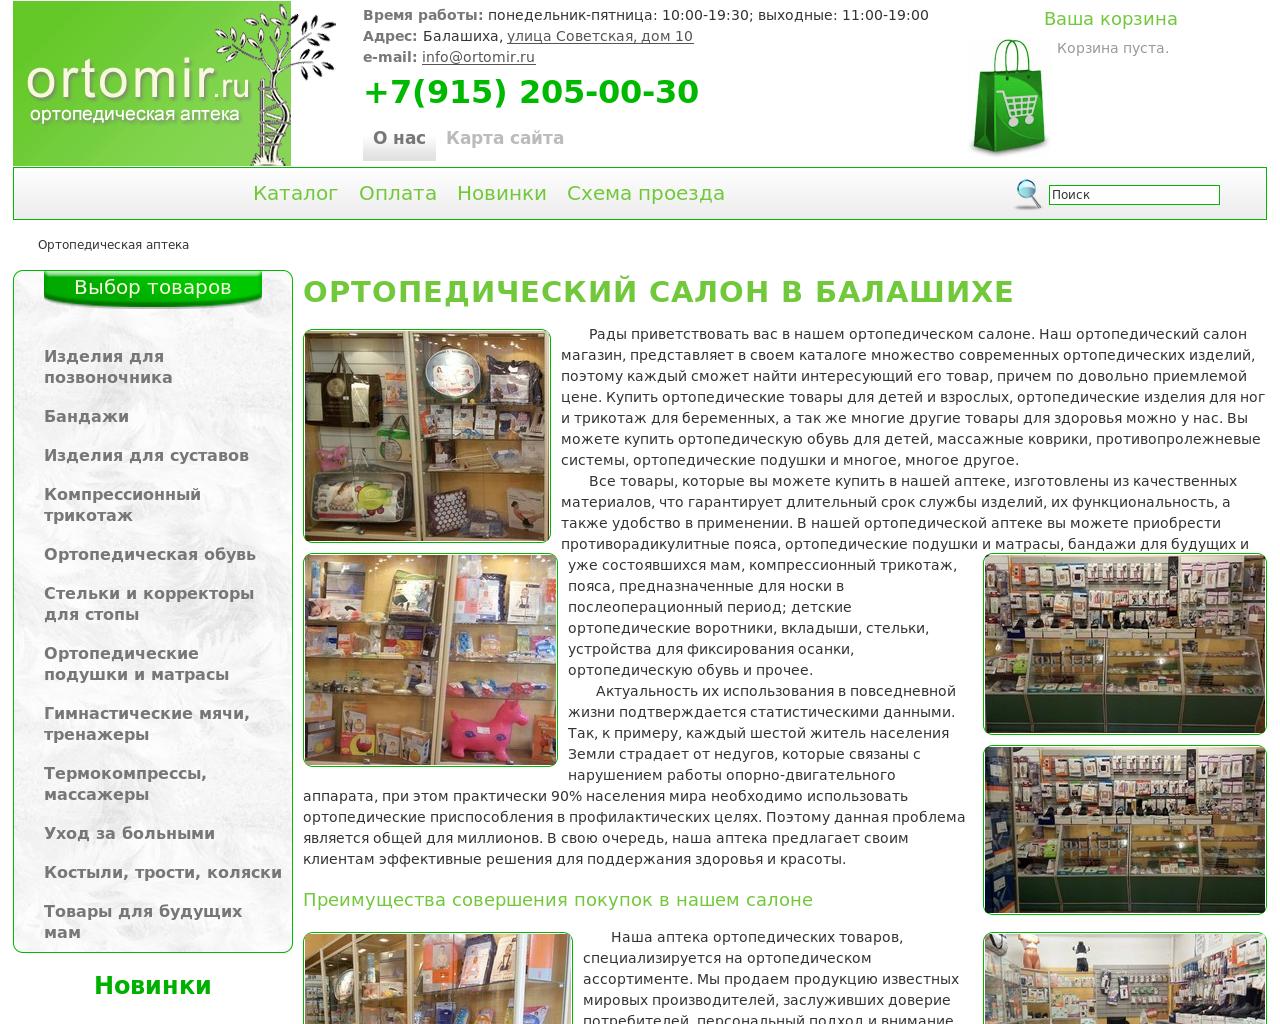 Изображение сайта ortomir.ru в разрешении 1280x1024